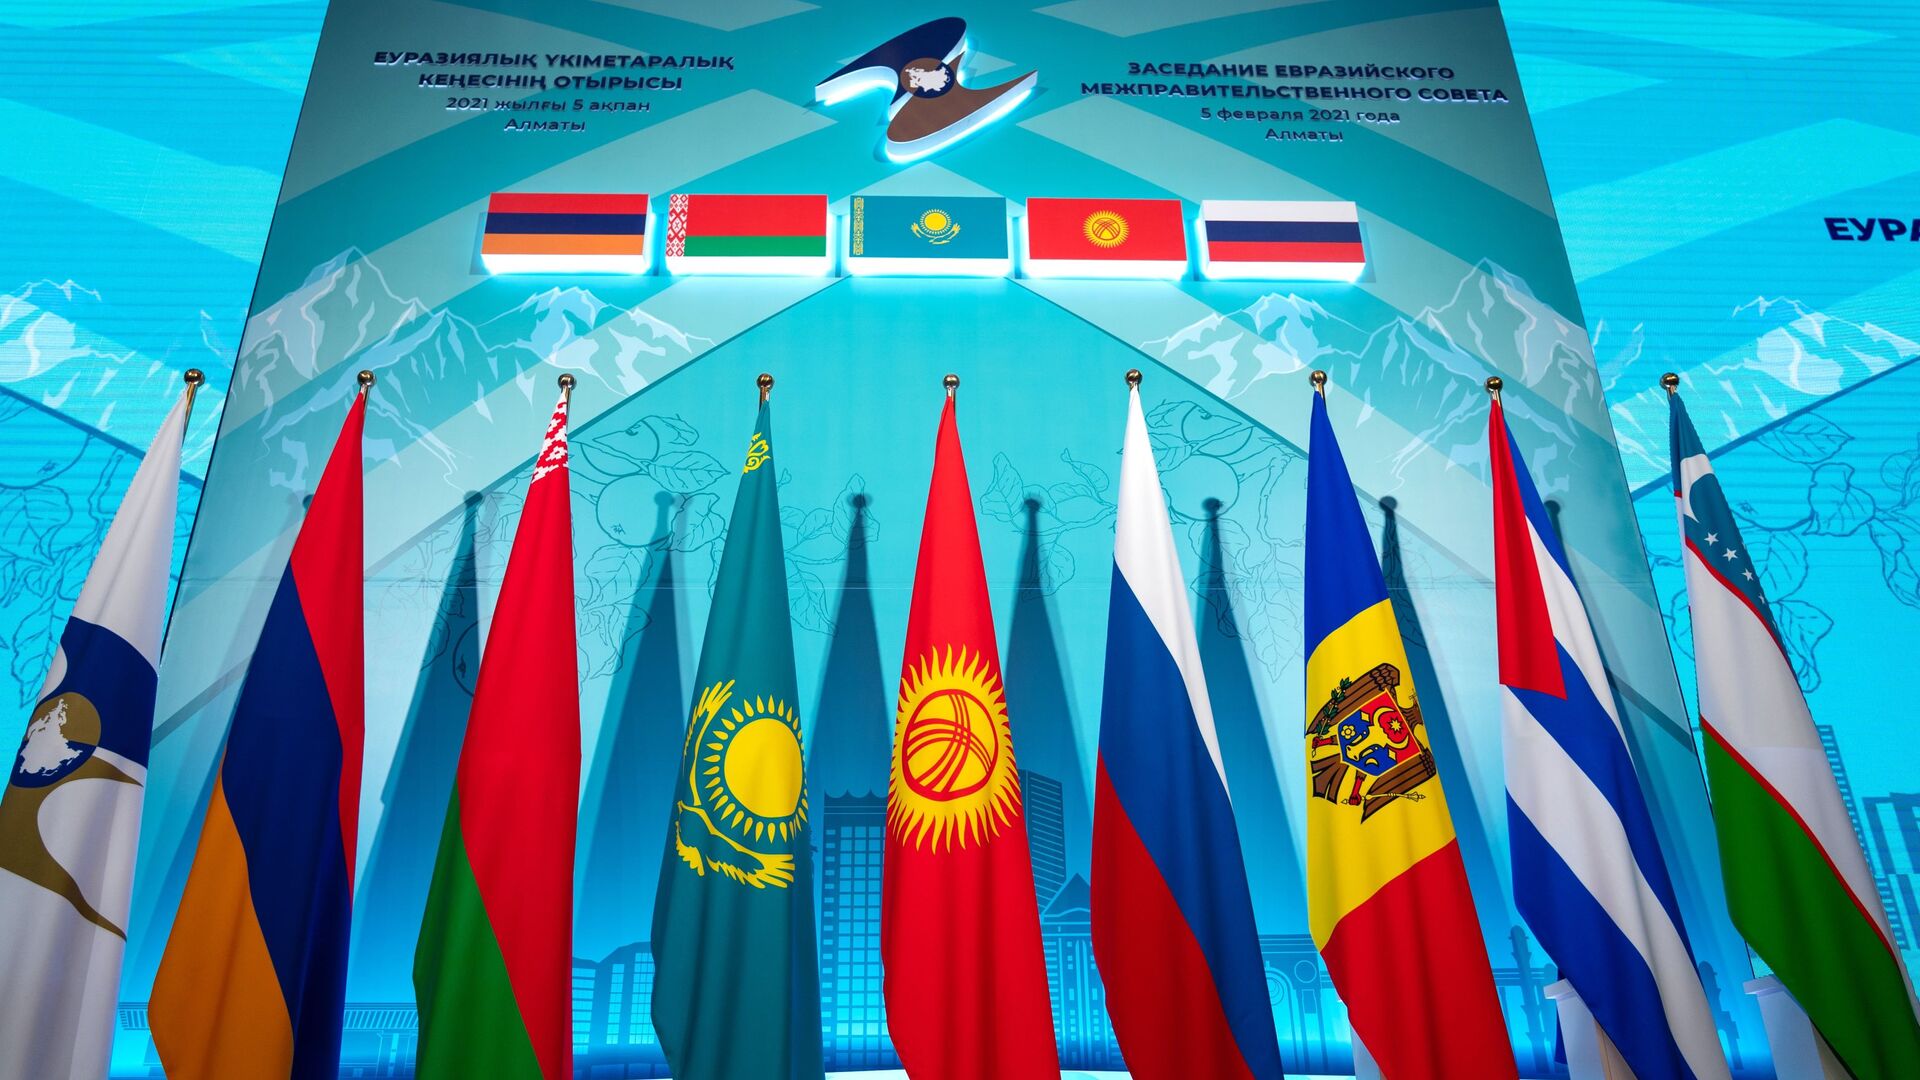 Заседание Евразийского межправительственного совета стран ЕАЭС - Sputnik Азербайджан, 1920, 04.06.2021